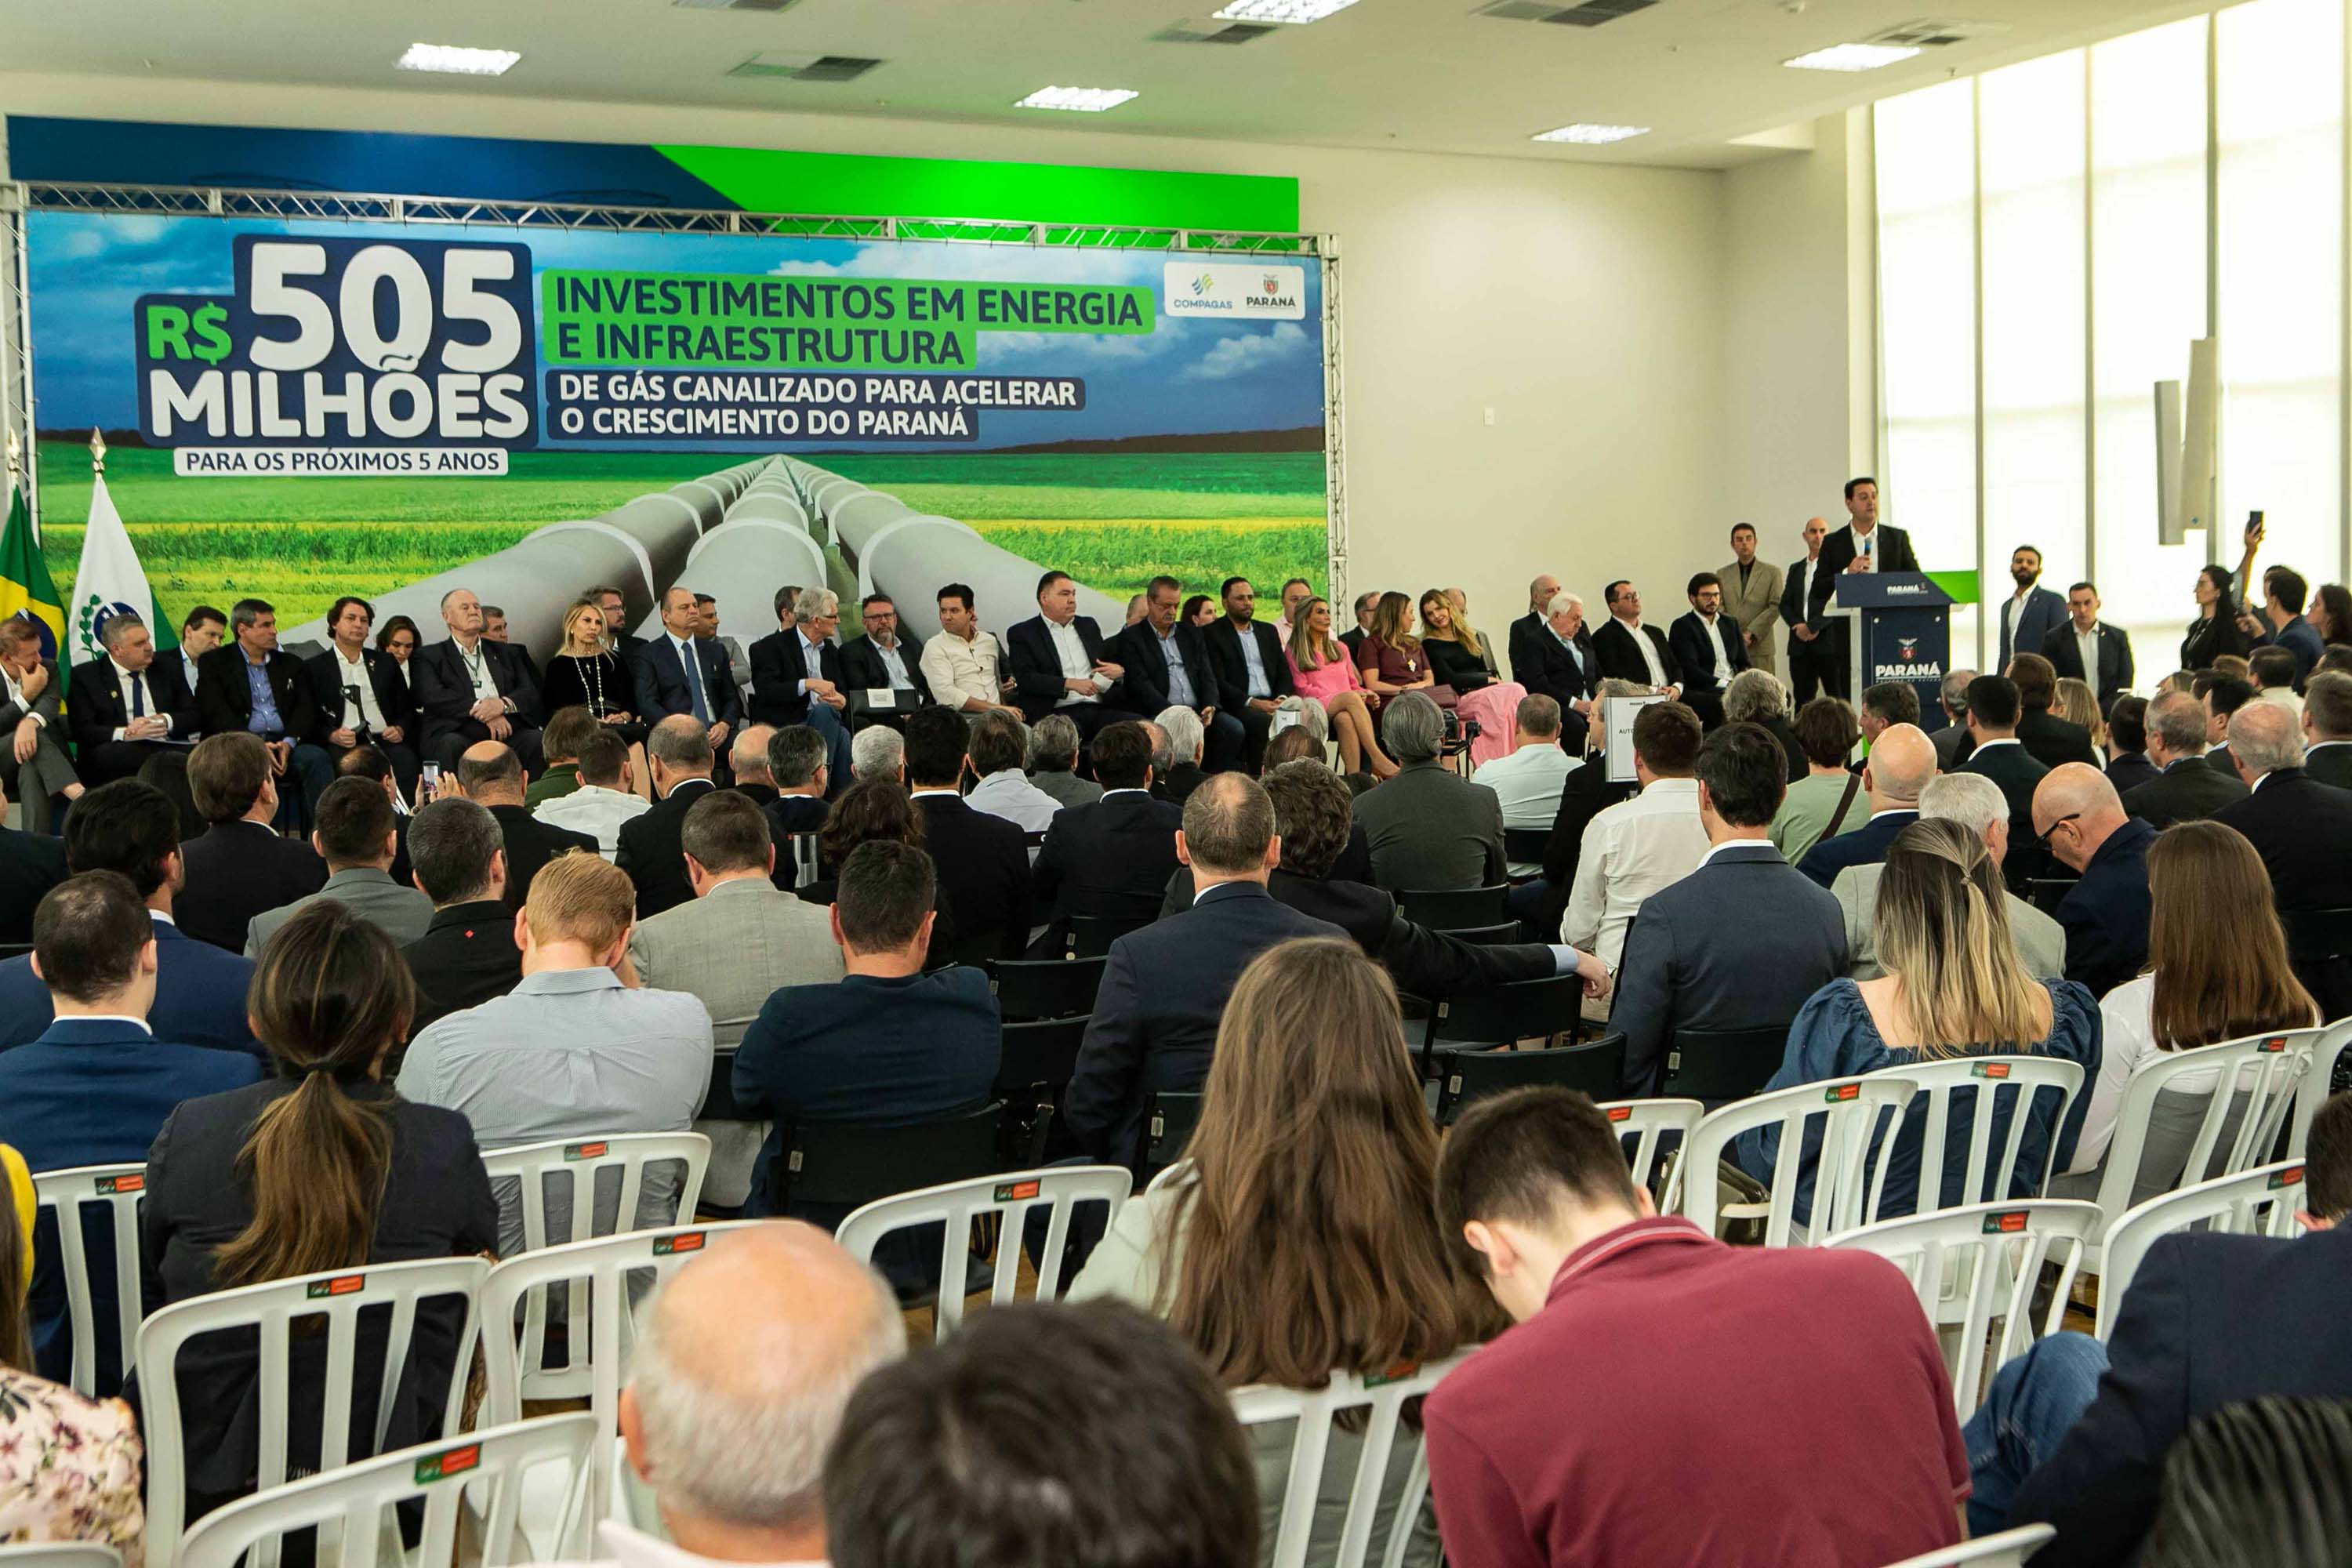 Governador Carlos Massa Ratinho Junior anunciou investimentos de R$ 505 milhões em energia e infraestrutura de gás canalizado para acelarar o crescimento do Paraná.